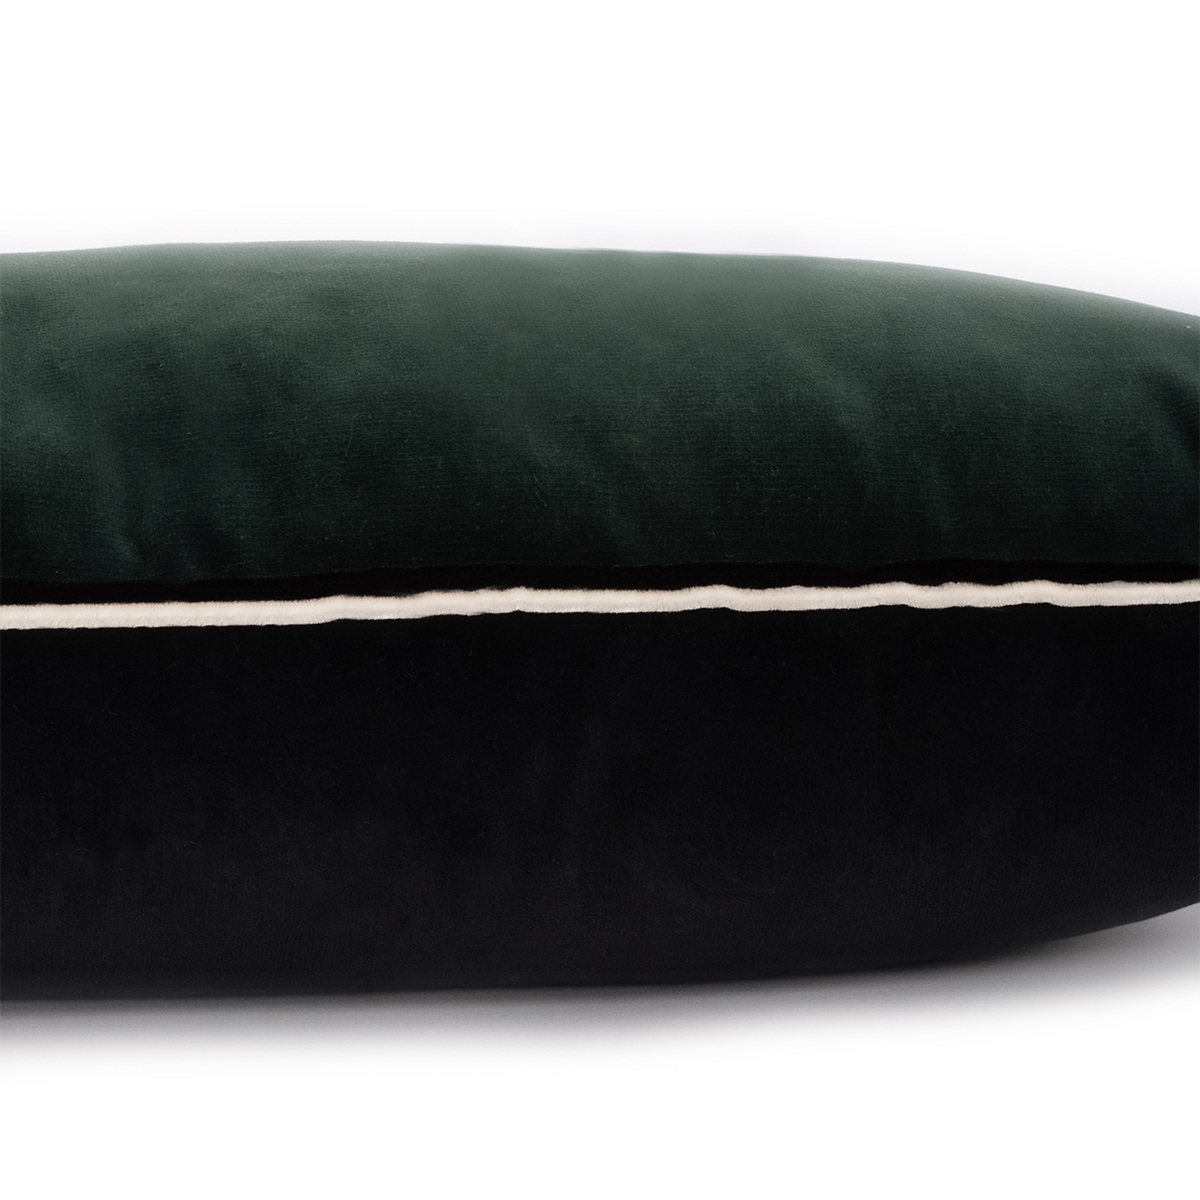 Cushion Double Jeu, Pistachio - 55 x 40 cm - Cotton velvet - image 20